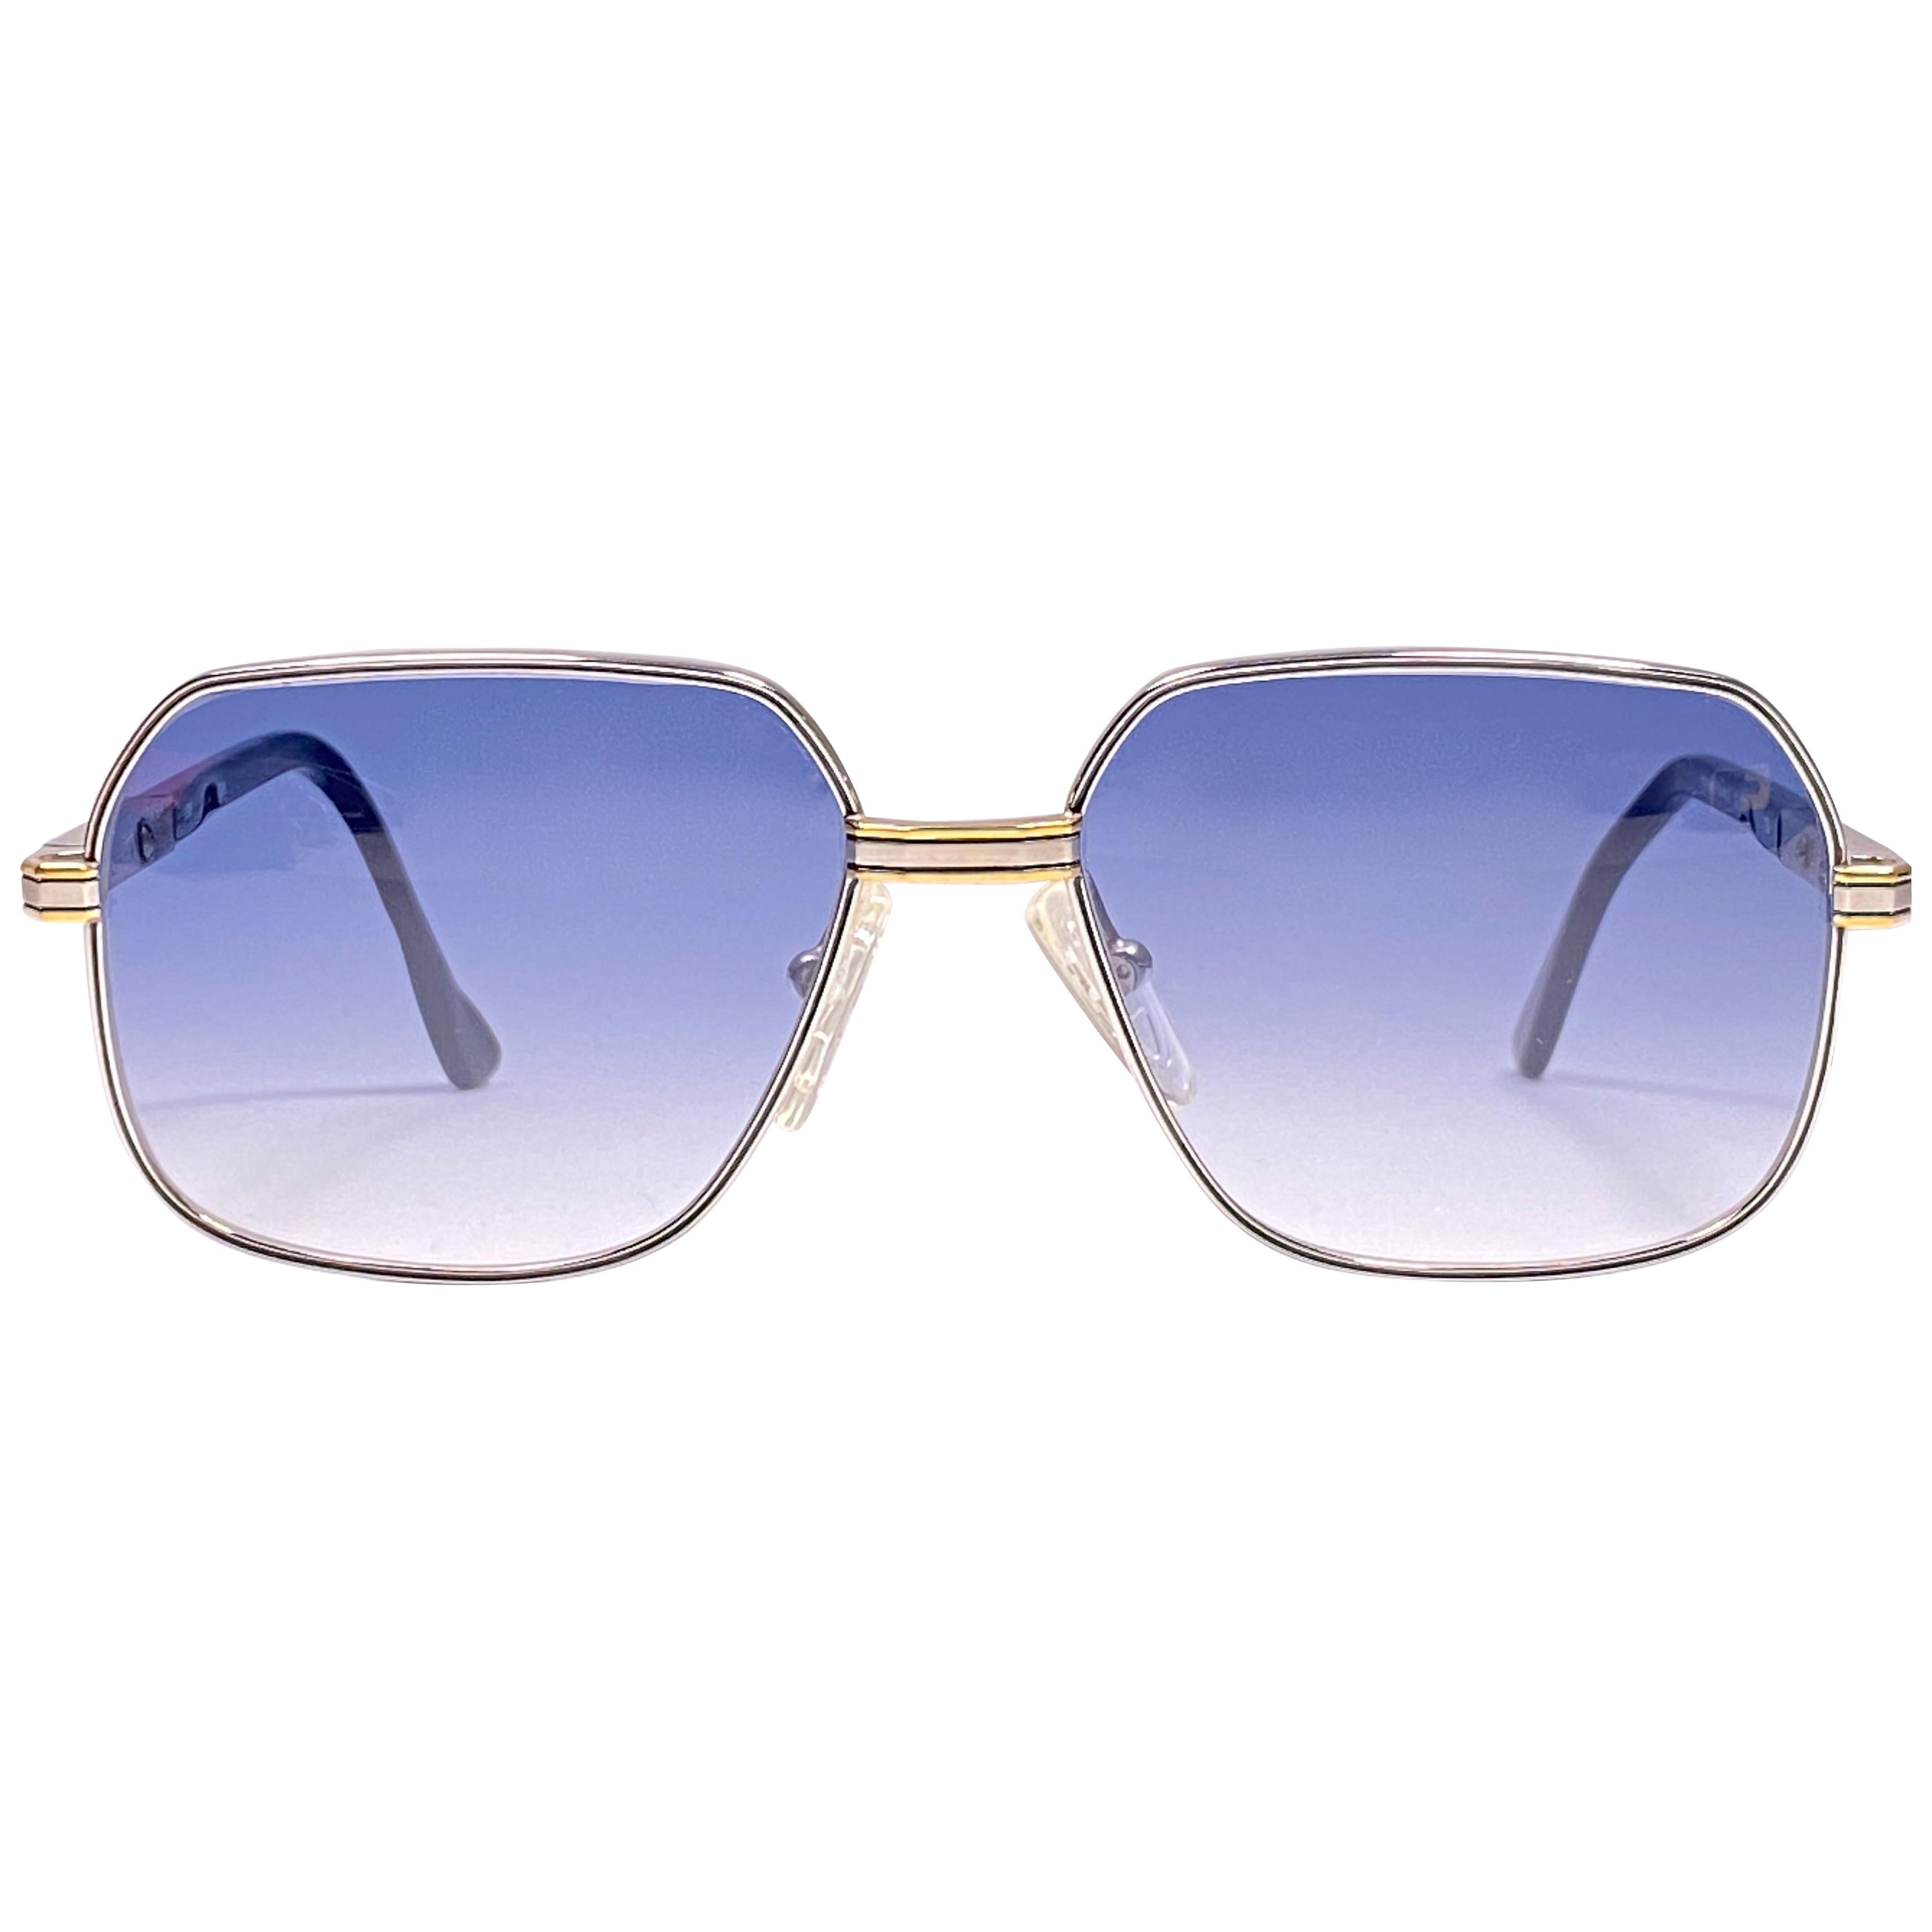 New Vintage Essilor Silver & Gold Blue Lenses France 1970's Sunglasses  